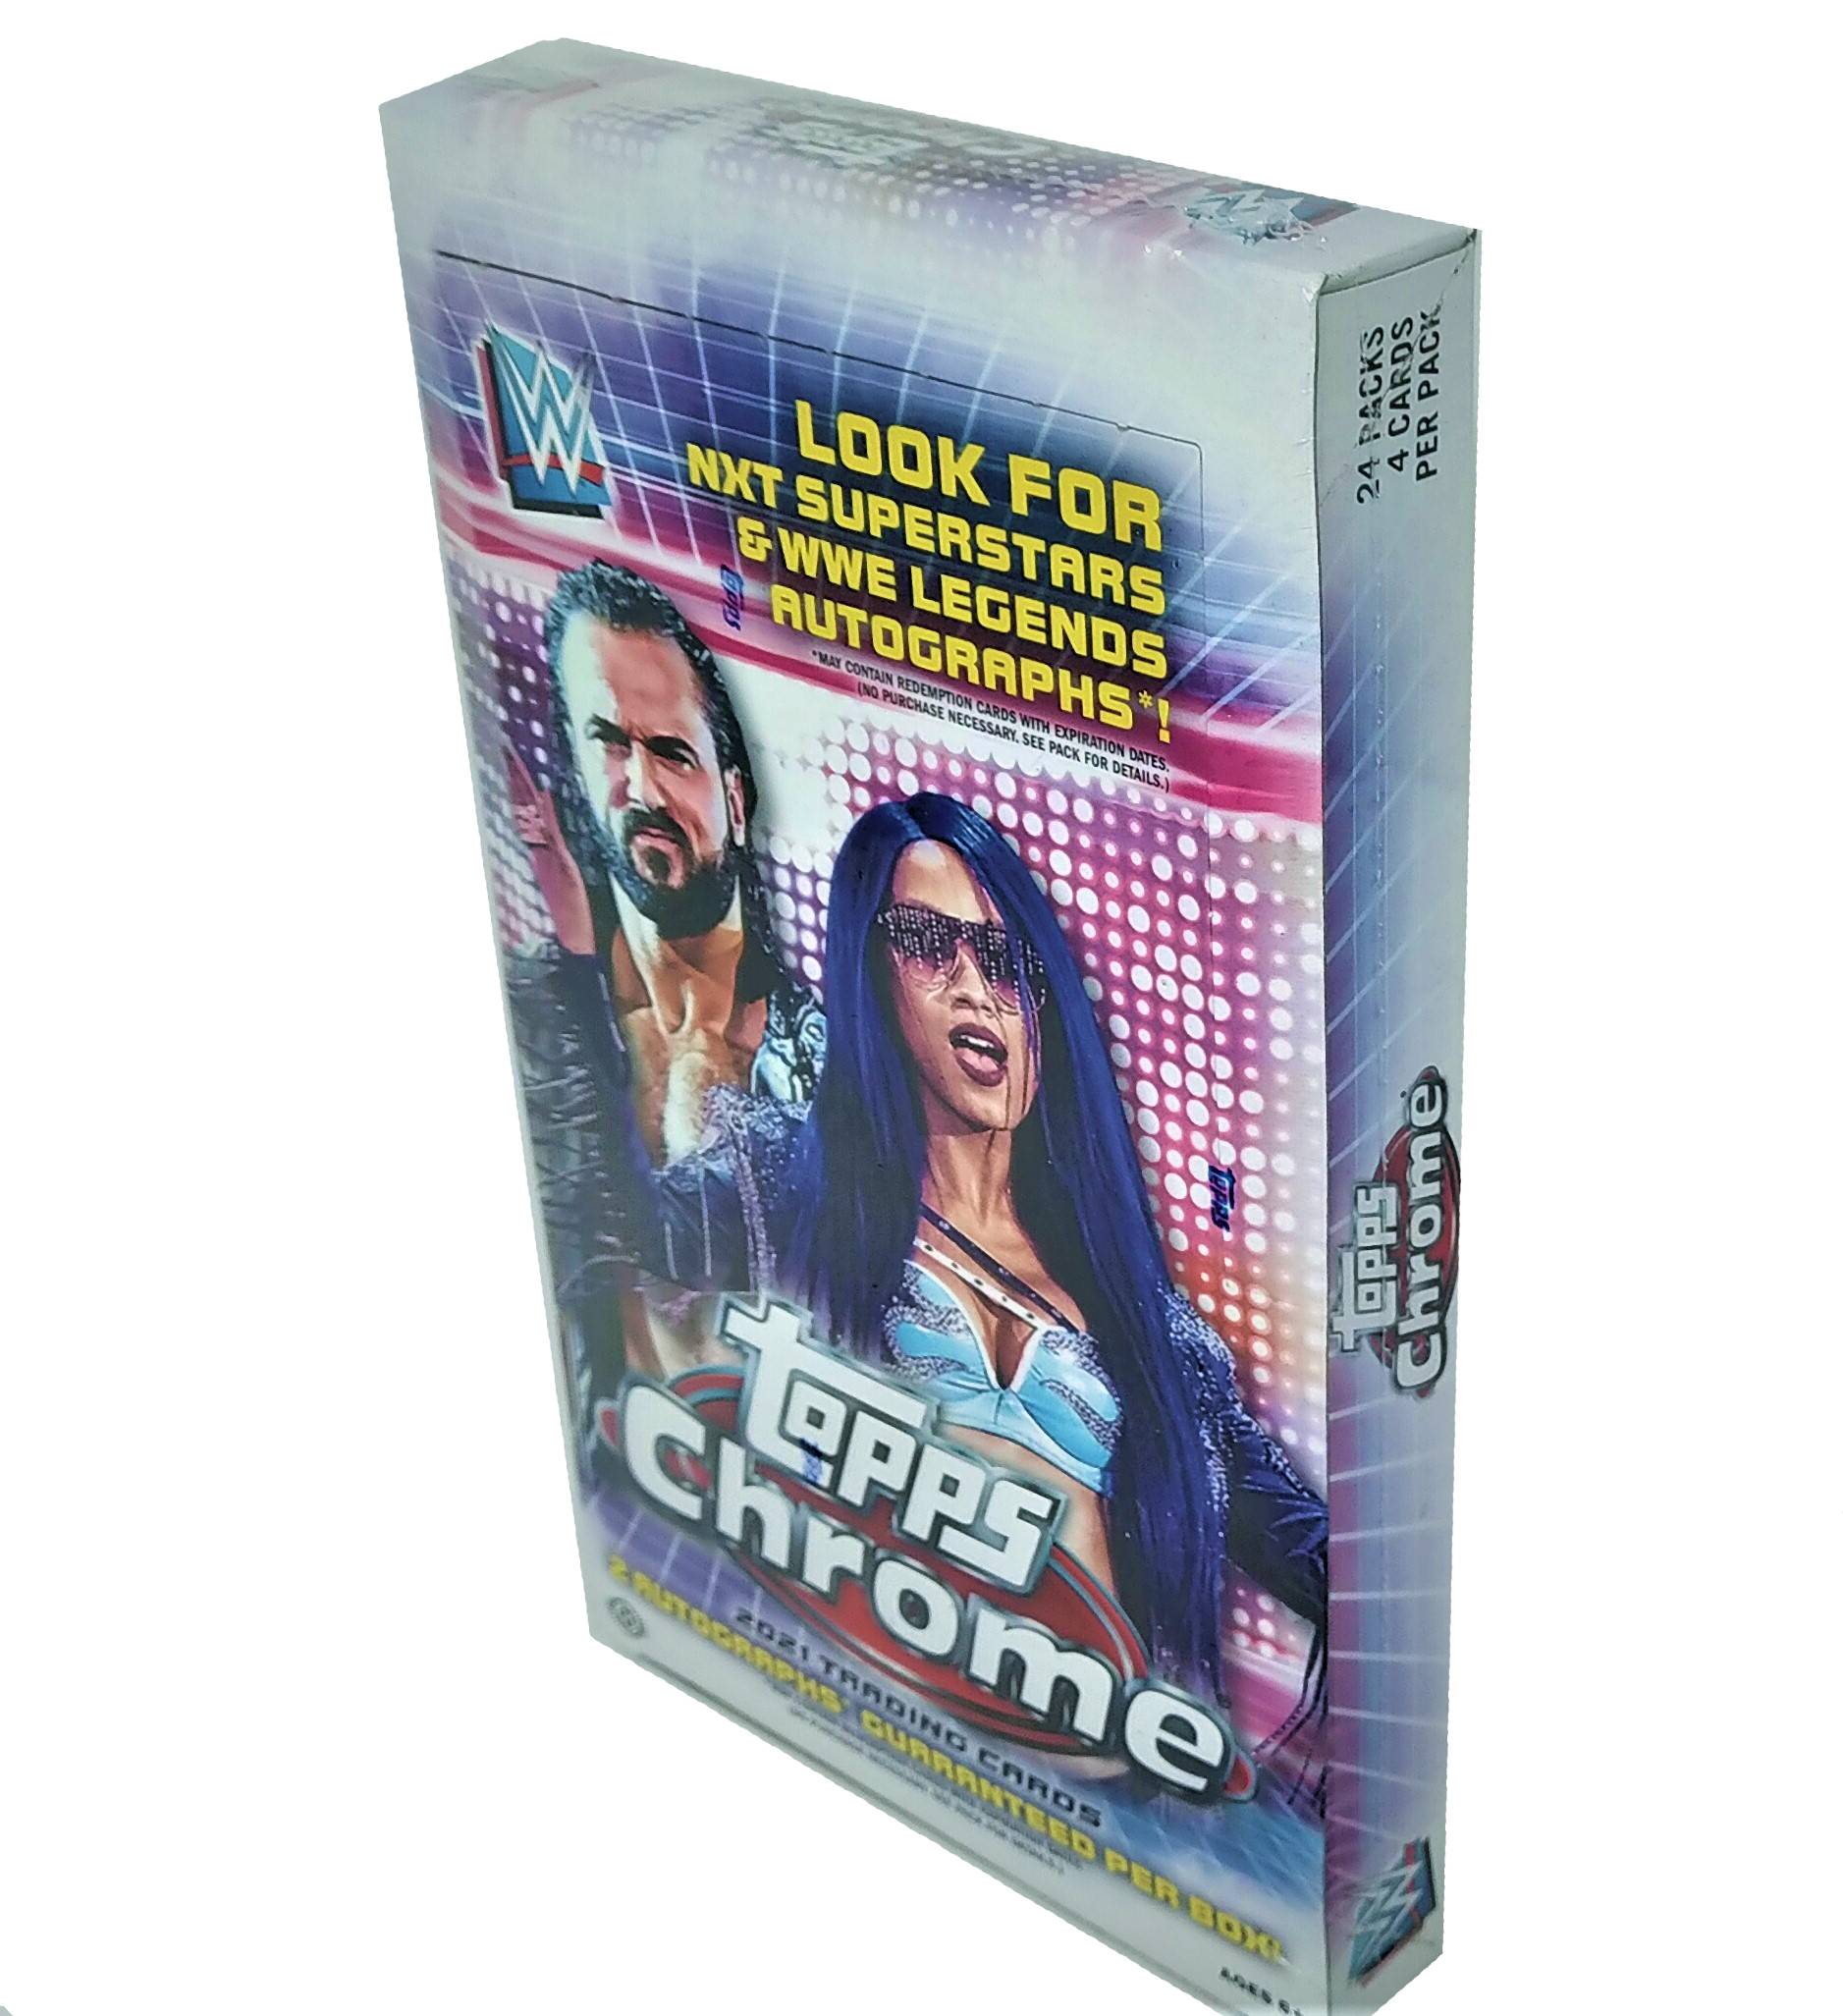 2021 Topps WWE Chrome Wrestling Hobby Box - Miraj Trading